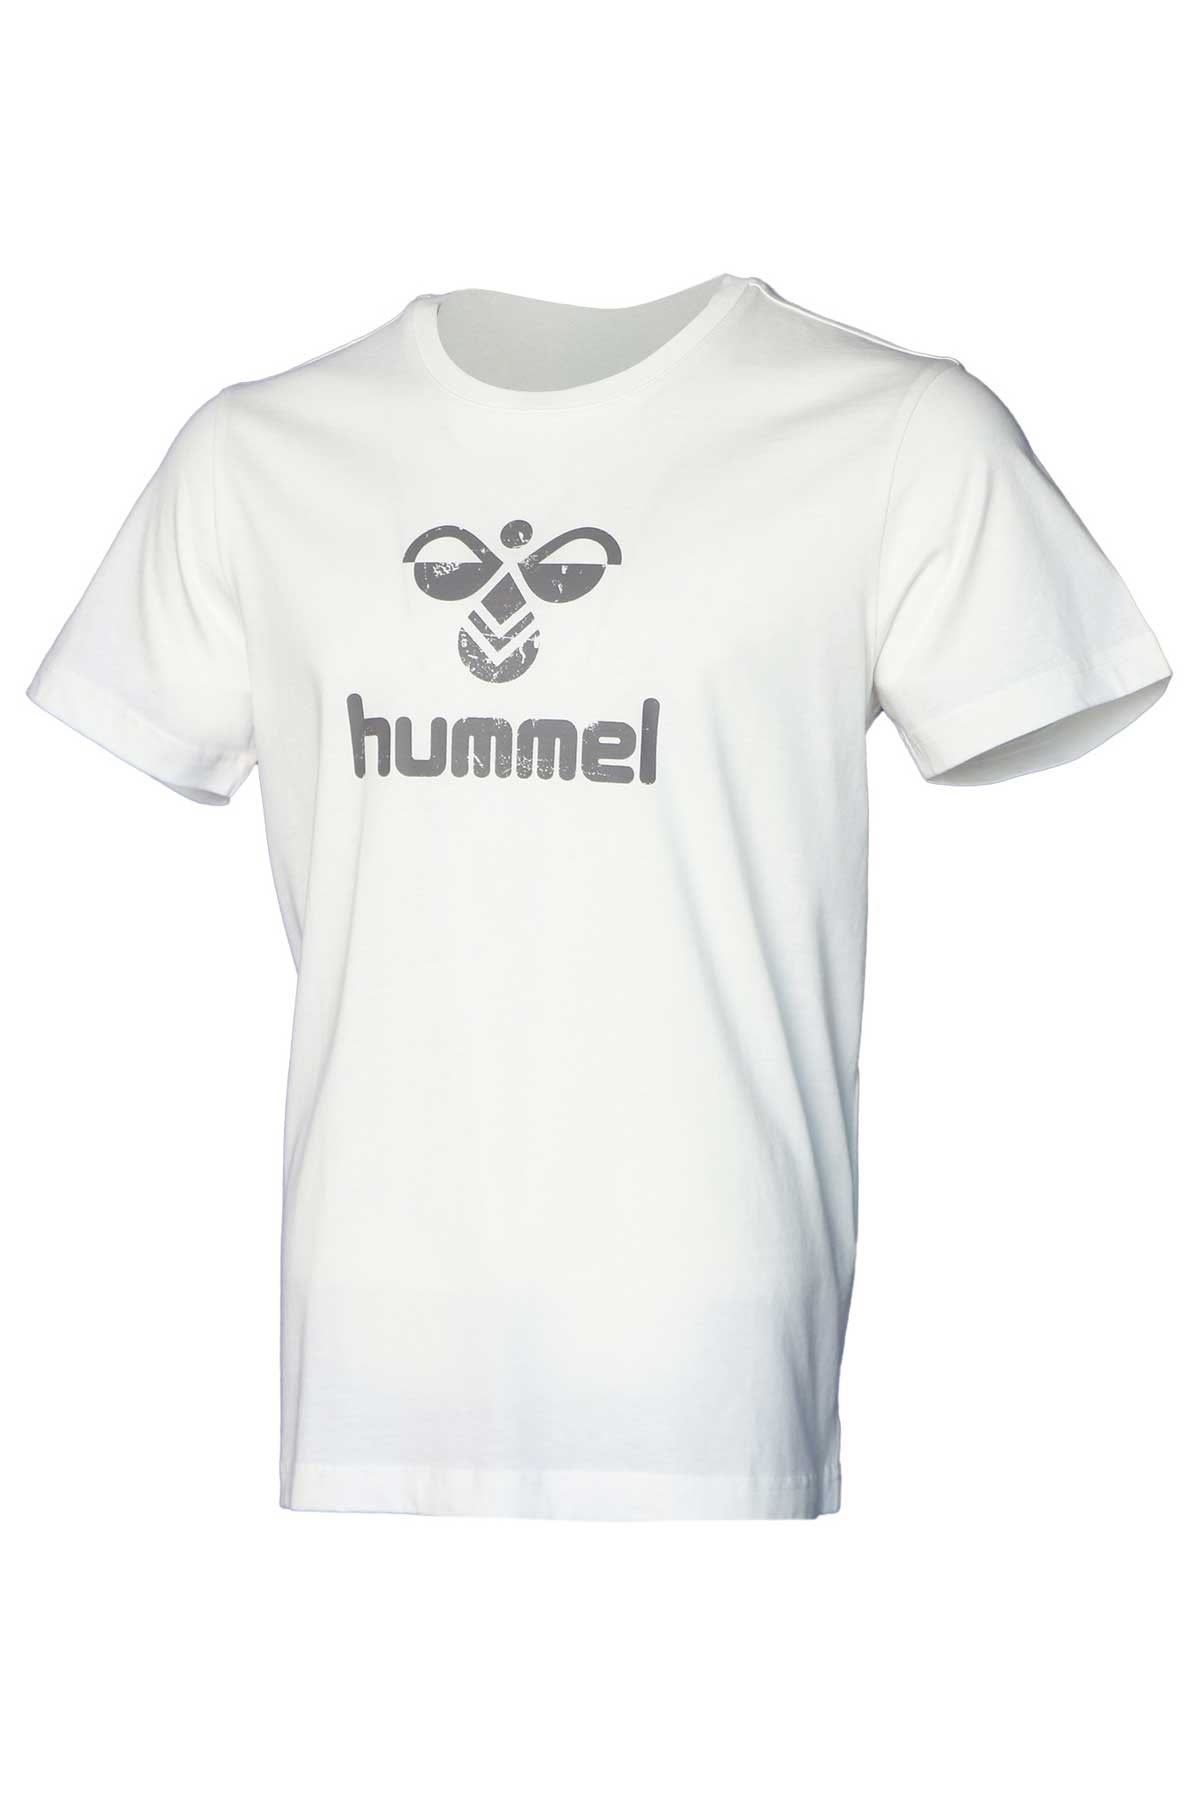 Hummel Hmlleona T-Shırt S/S Erkek Beyaz Tişört - 911667-9003